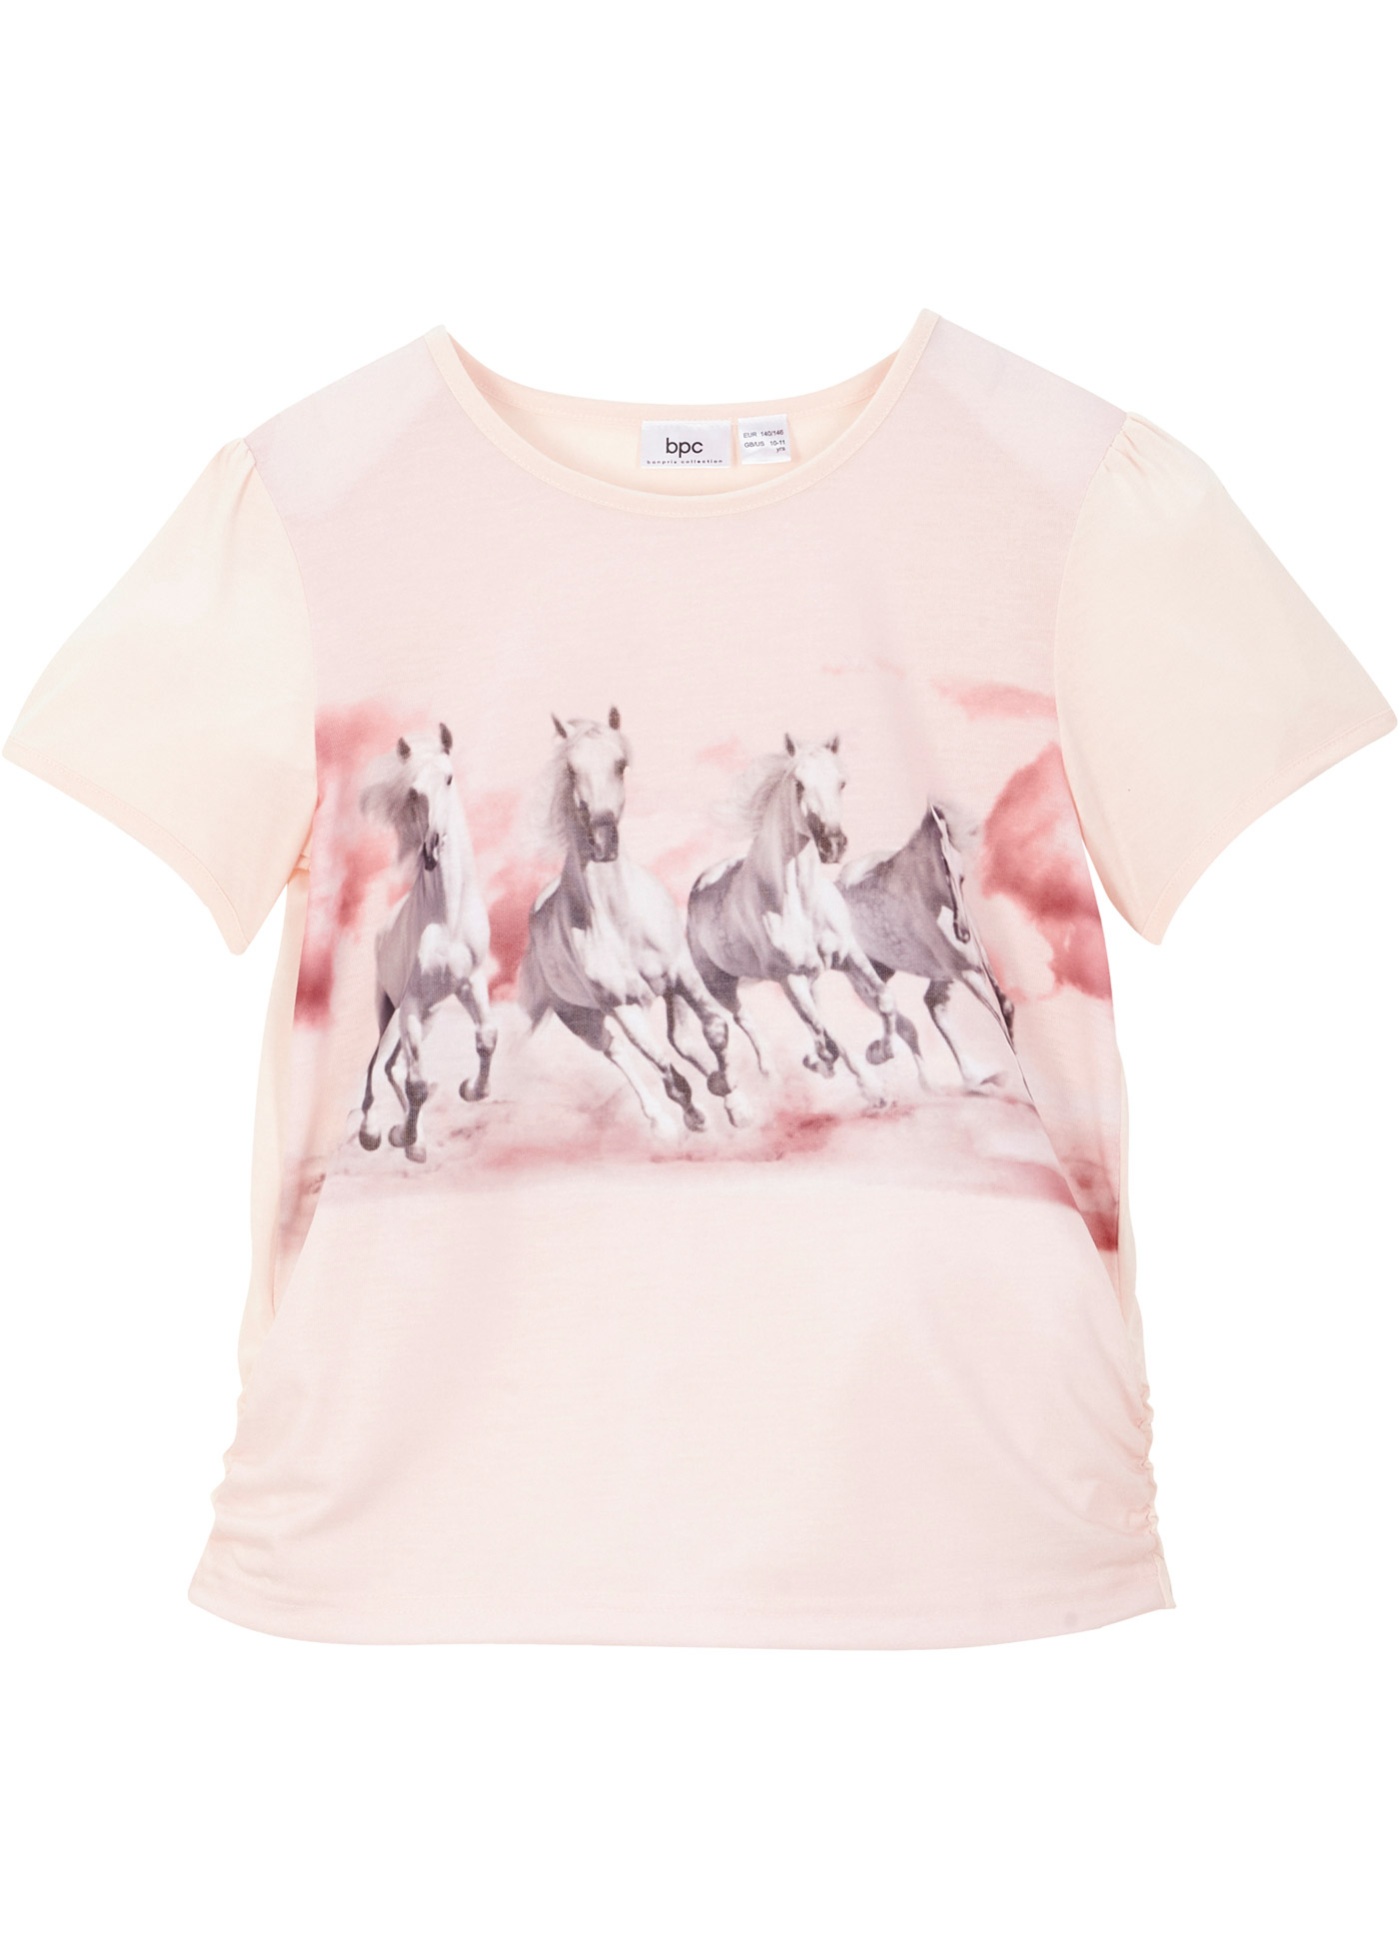 Mädchen T-Shirt mit Pferde-Fotodruck